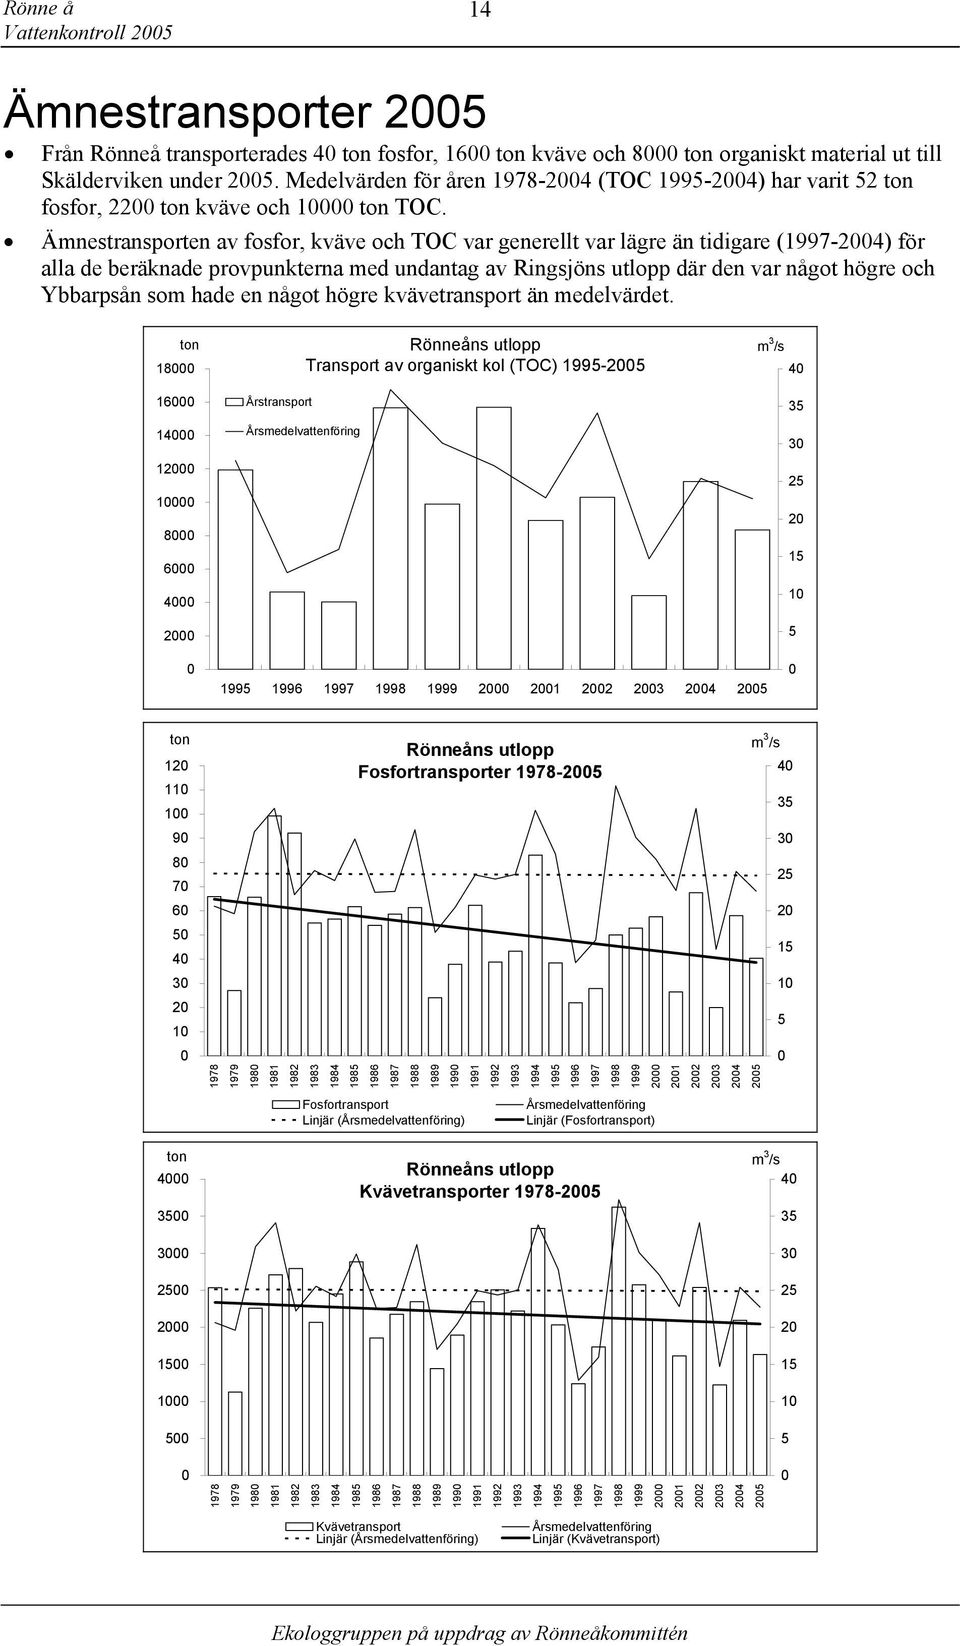 Ämnestransporten av fosfor, kväve och TOC var generellt var lägre än tidigare 1997-24) för alla de beräknade provpunkterna med undantag av Ringsjöns utlopp där den var något högre och Ybbarpsån som